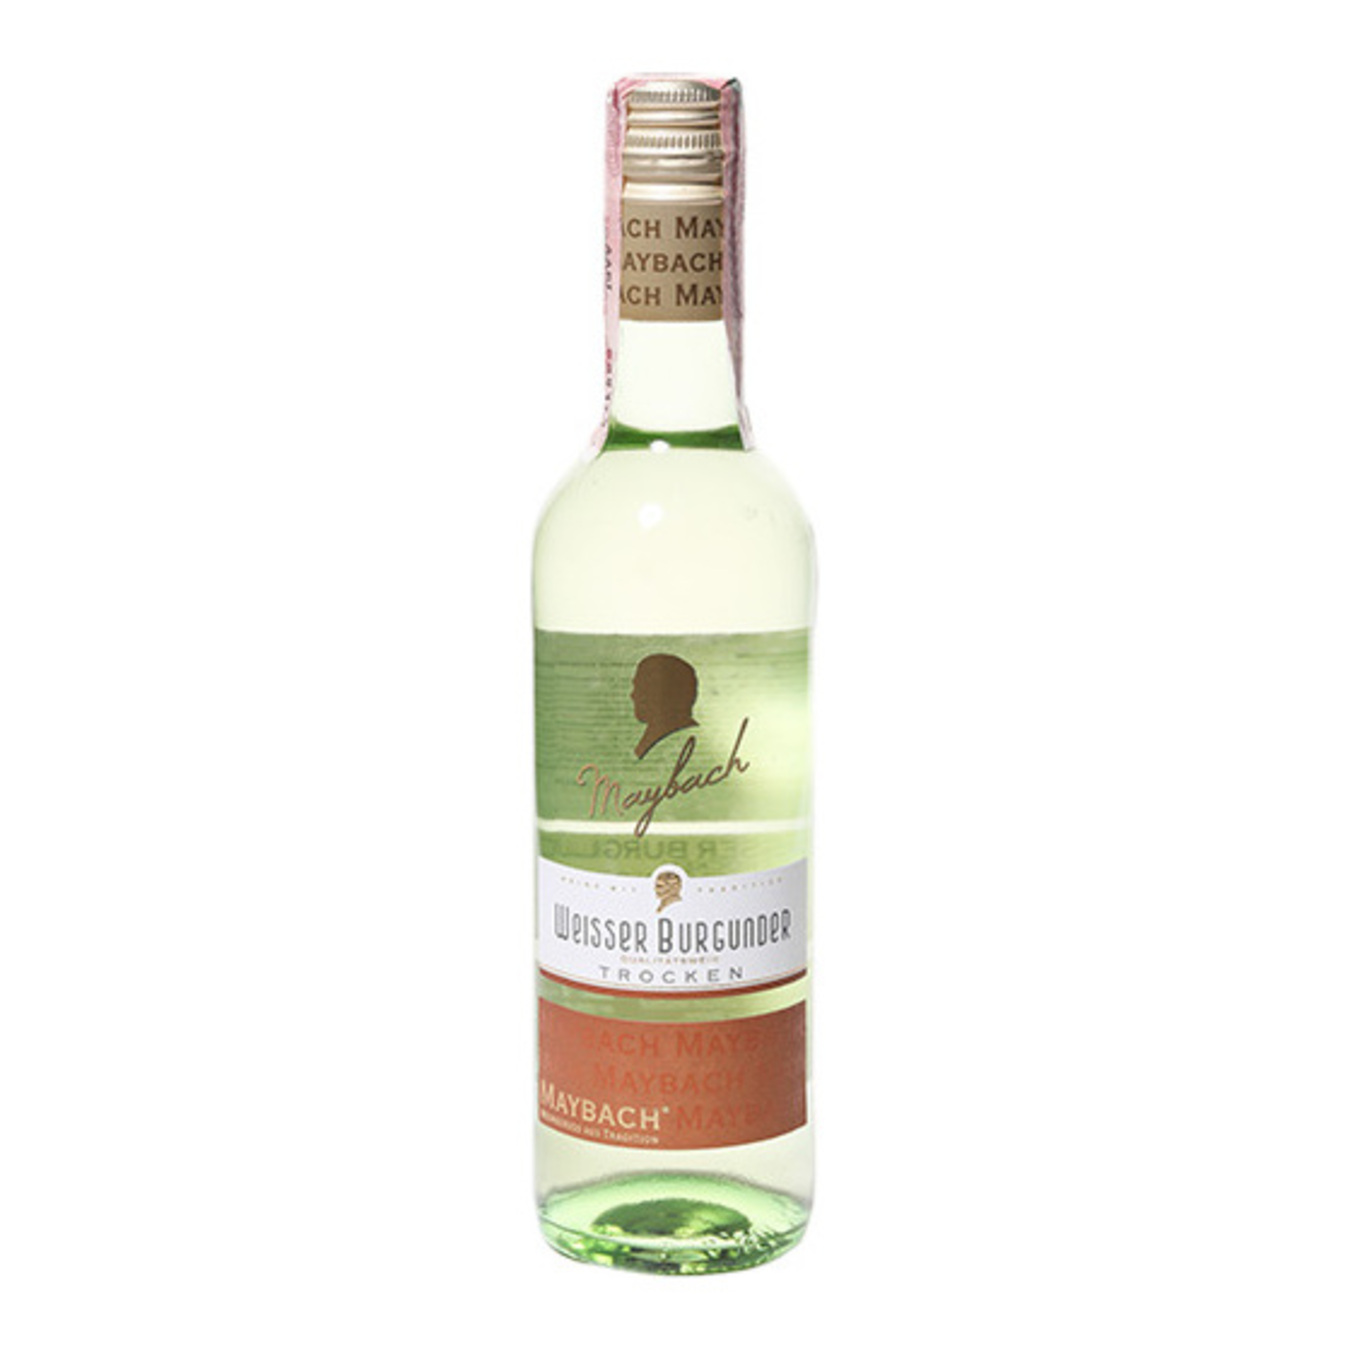 Maybach Weisser Burgunder Trocken white dry wine 12,5% 0,25l